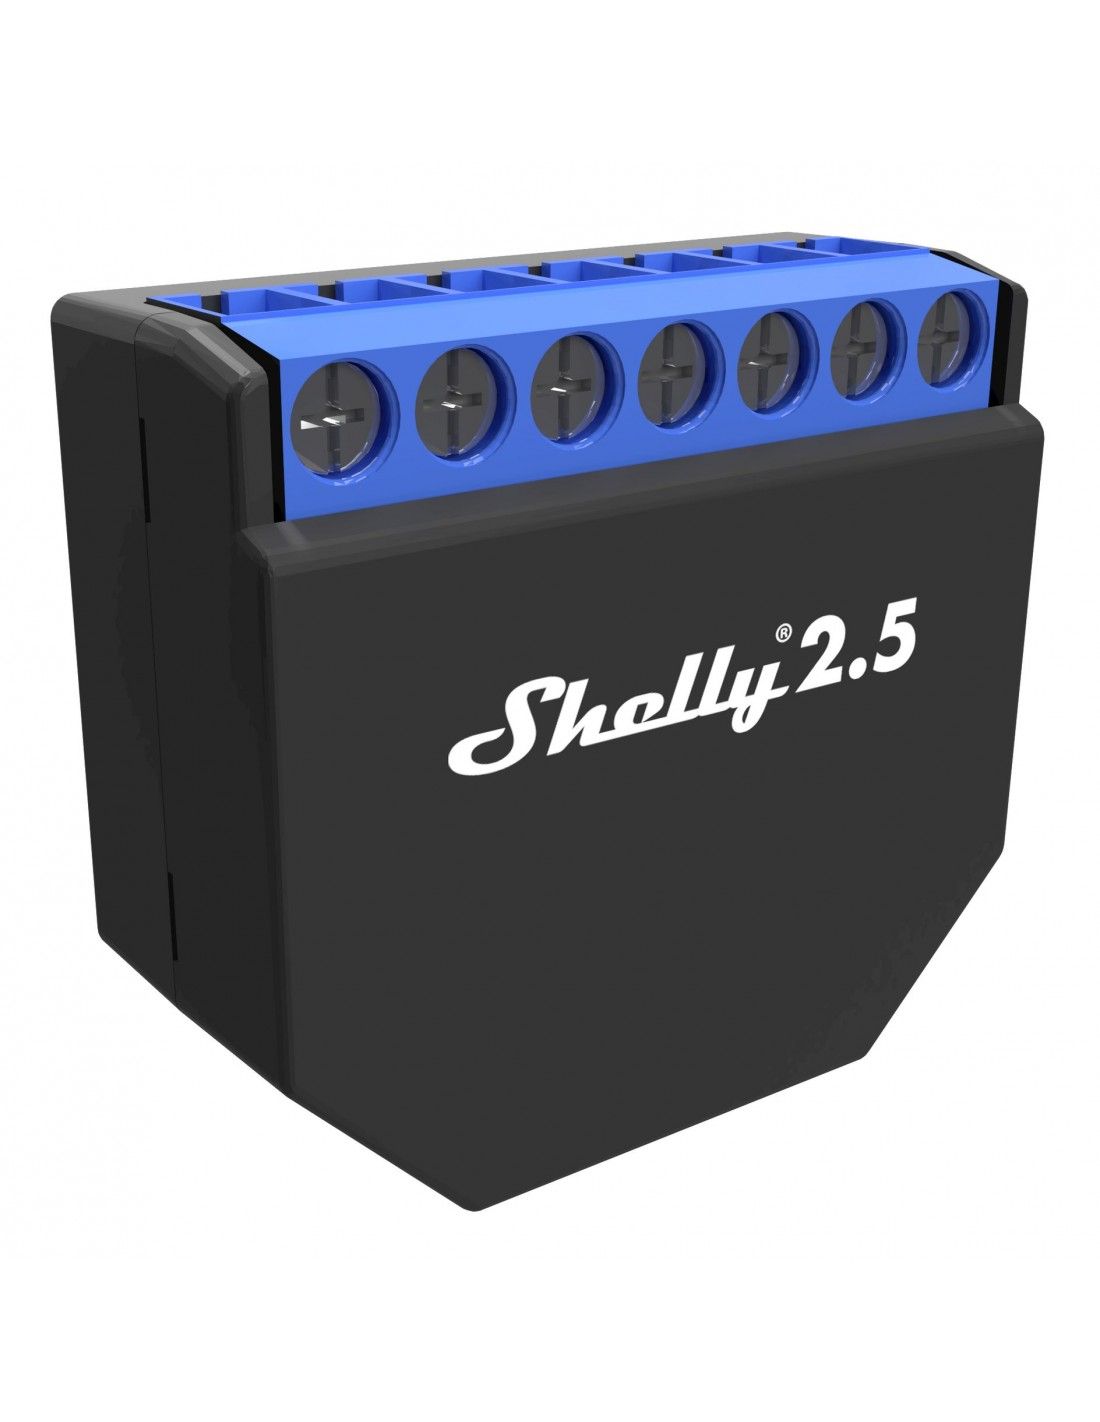 Shelly 2,5 - Shelly USA